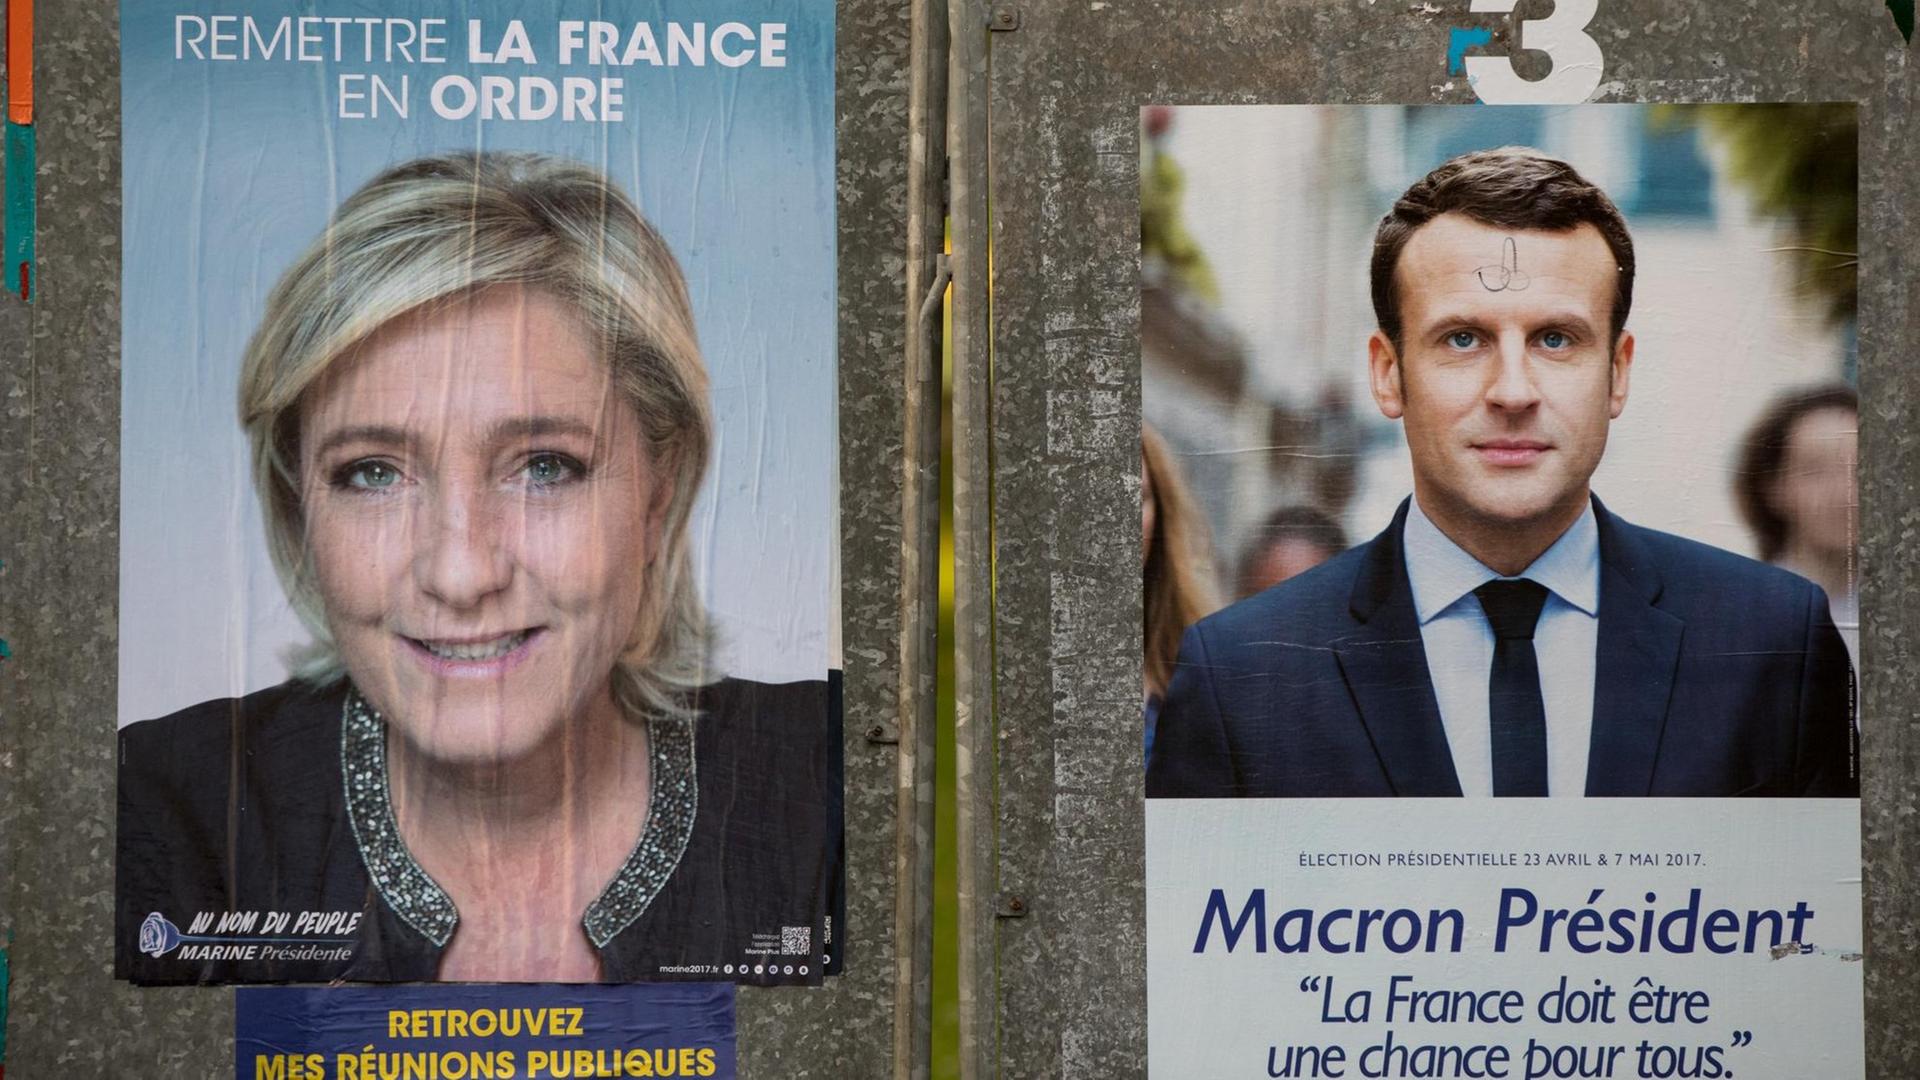 Wahlplakate mit den Spitzenkandidaten für die Präsidentschaftswahl in Frankreich, der Rechtspopulistin Le Pen und dem sozialliberalen Macron.